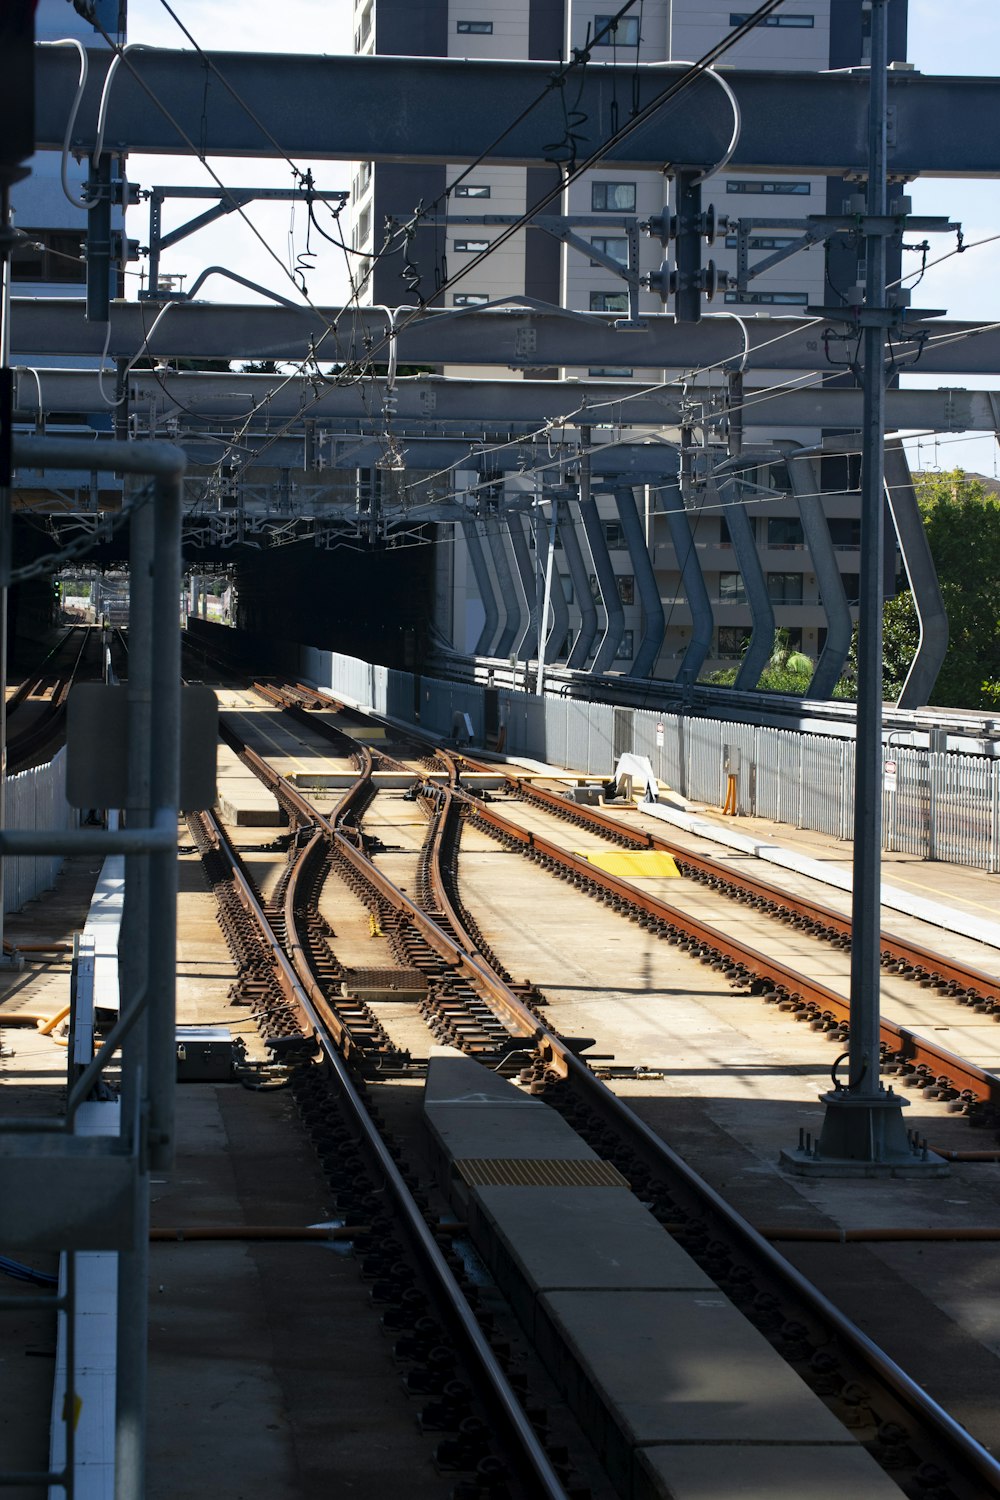 gray metal train rail during daytime